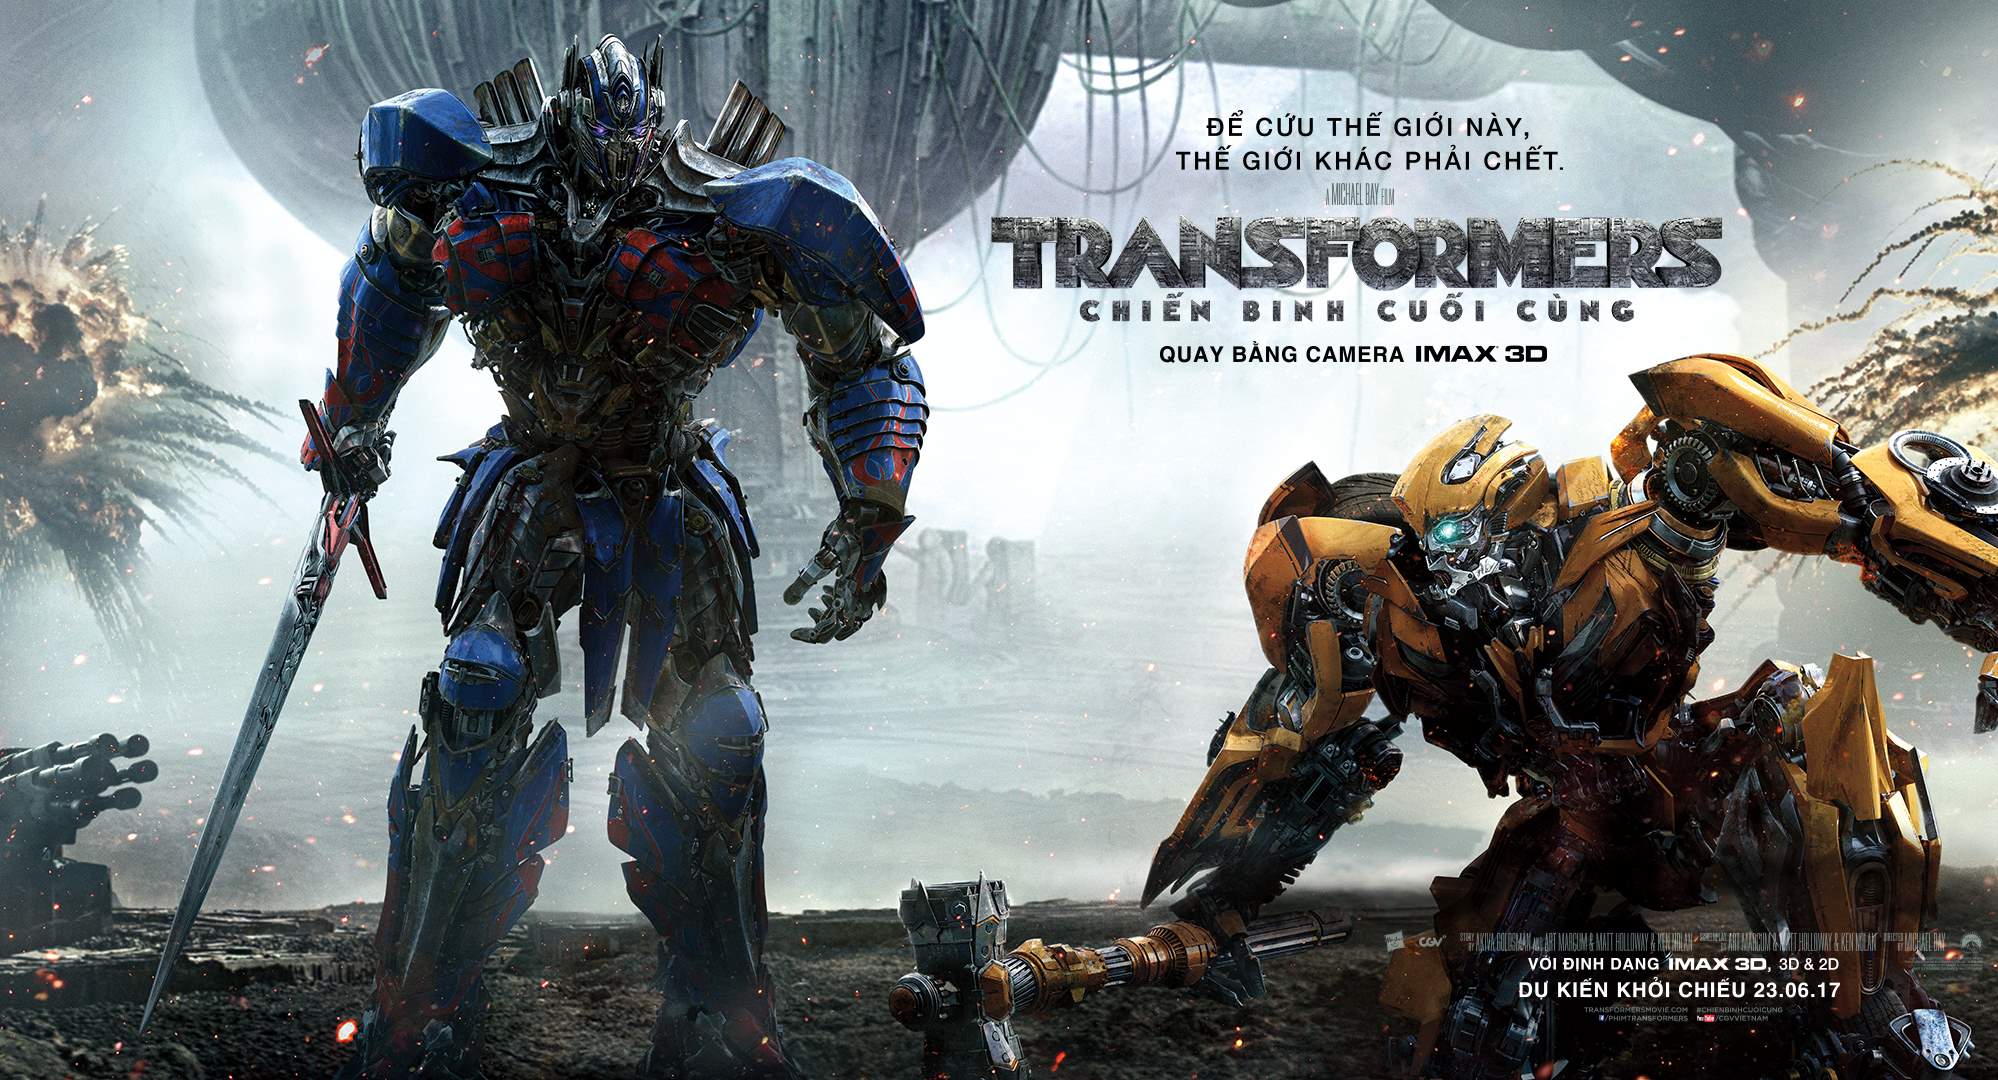 Phim Transformers: Nếu bạn yêu thích phim hành động kịch tính, thì không thể bỏ qua phim Transformers. Hãy xem hành trình của các robot dũng cảm trong cuộc chiến chống lại thế lực đen tối và tìm hiểu về cuộc đối đầu gay cấn giữa Autobot và Decepticon. Chắc chắn bạn sẽ có một trải nghiệm thú vị tuyệt vời!